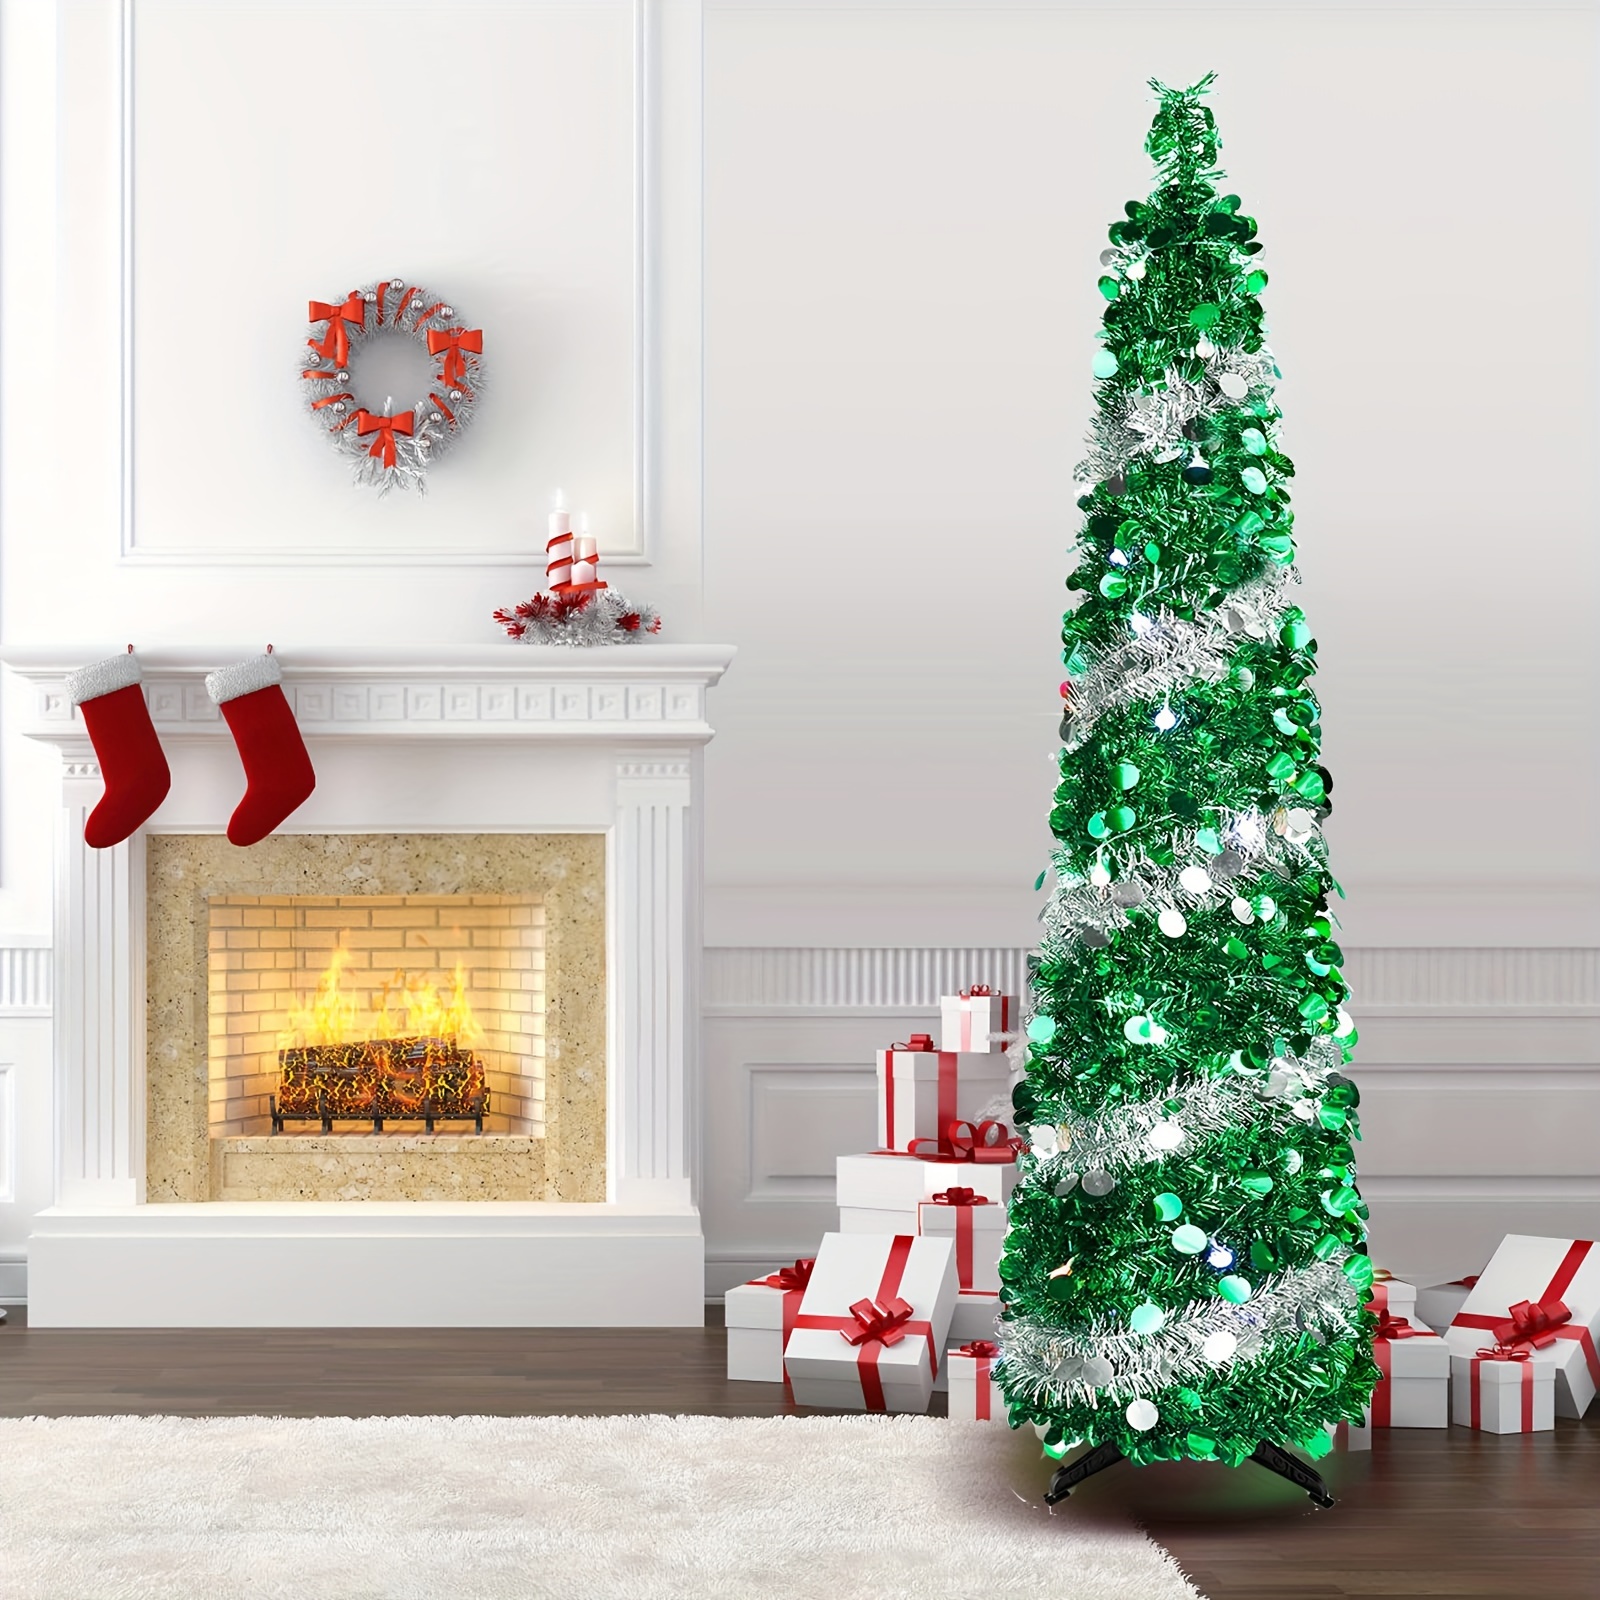 1個、ポップアップクリスマスツリー、5FT/1.5M折りたたみ式人工クリスマスツリー、見掛け倒しの小さな鉛筆のクリスマスツリー、ホームホリデー暖炉パーティー屋内屋外クリスマス装飾用